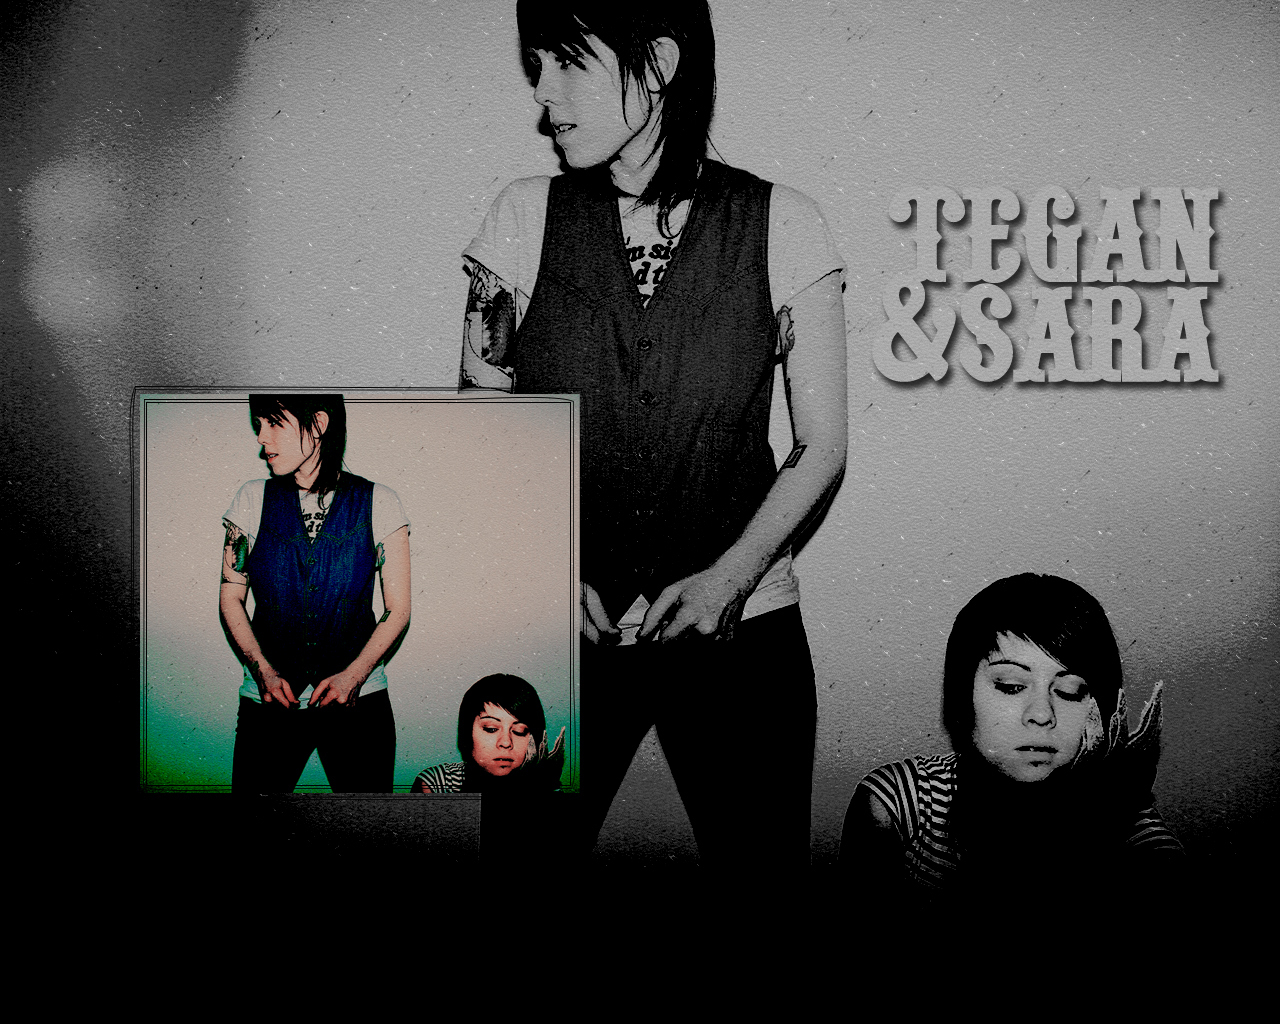 Tegan And Sara Wallpaper